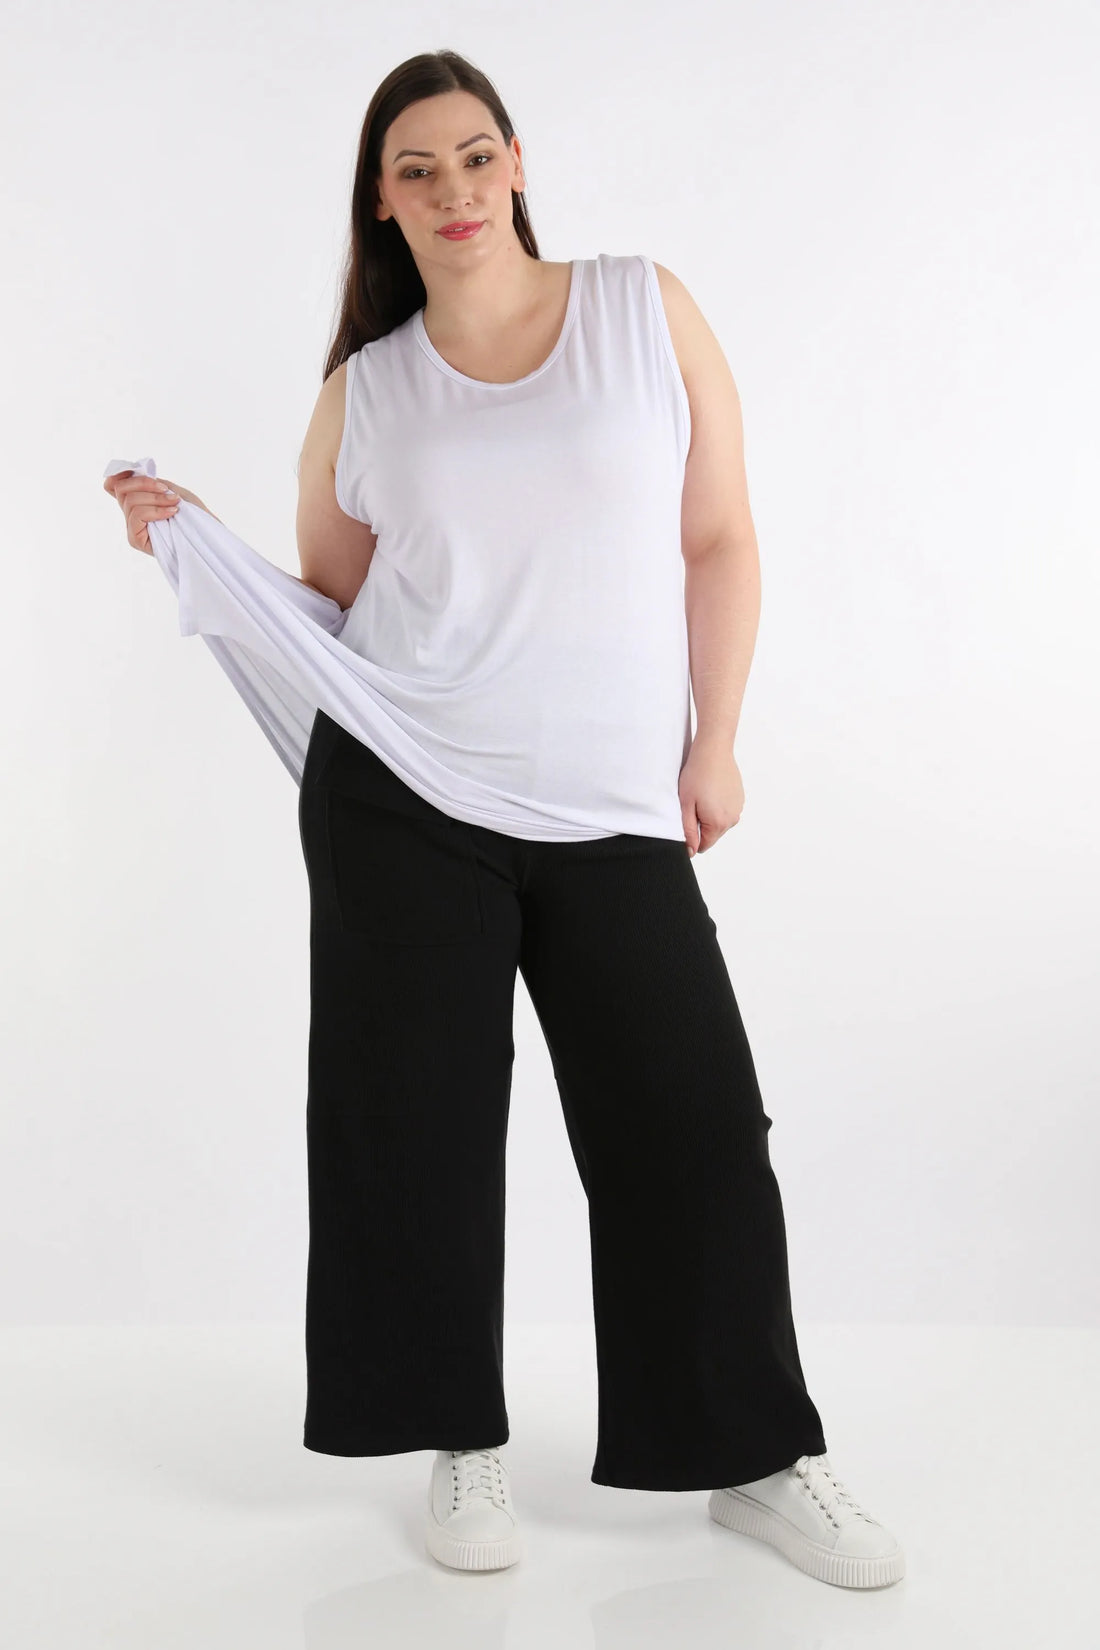 Hose von AKH Fashion aus Baumwolle in gerader Form, 1252.06907, Schwarz, Schick, Modern